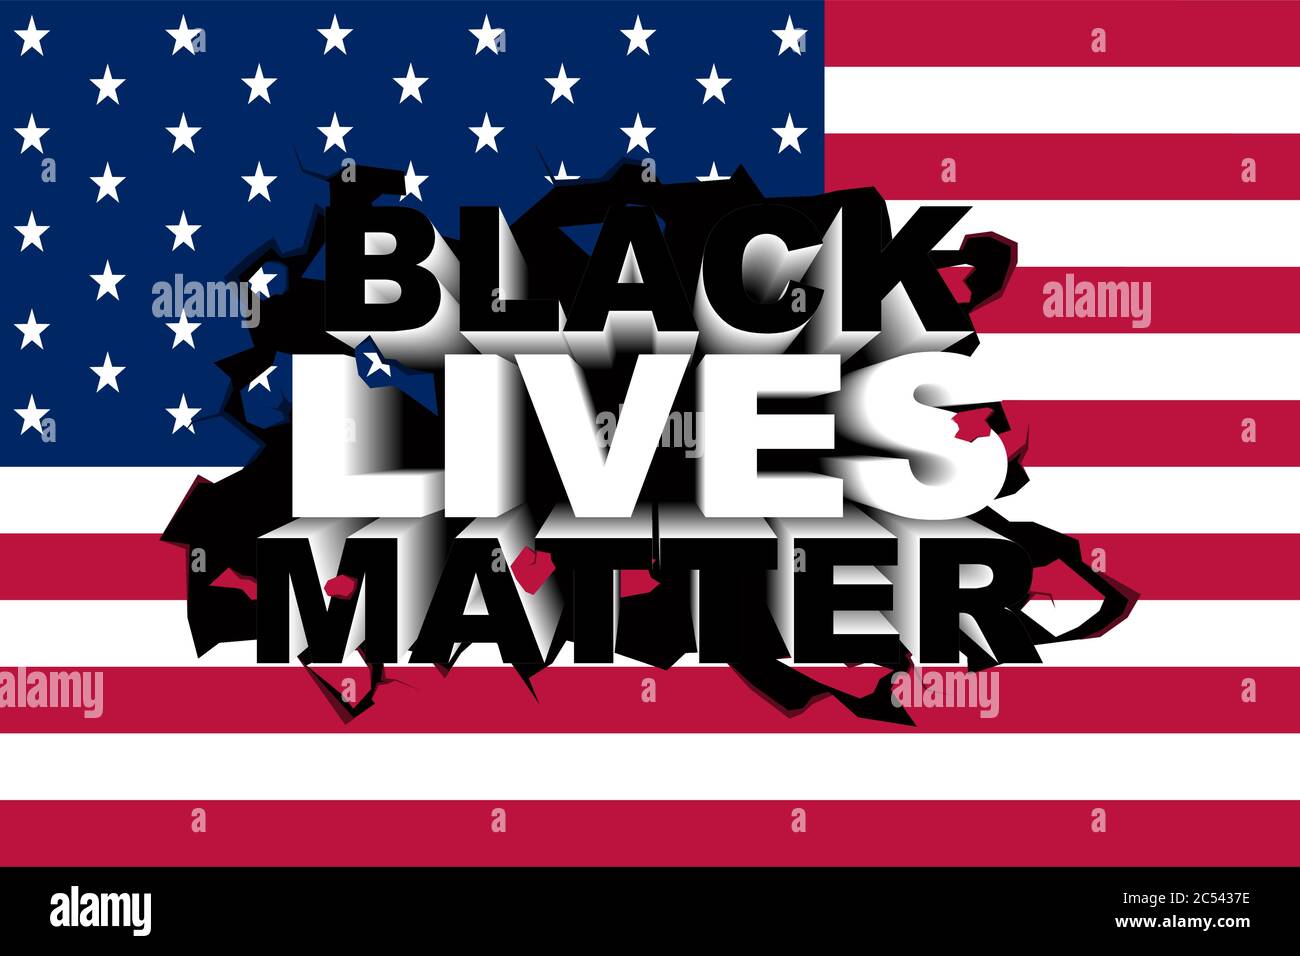 Illustrazione vettoriale concettuale del movimento Black Lives Matter. Illustrazione Vettoriale